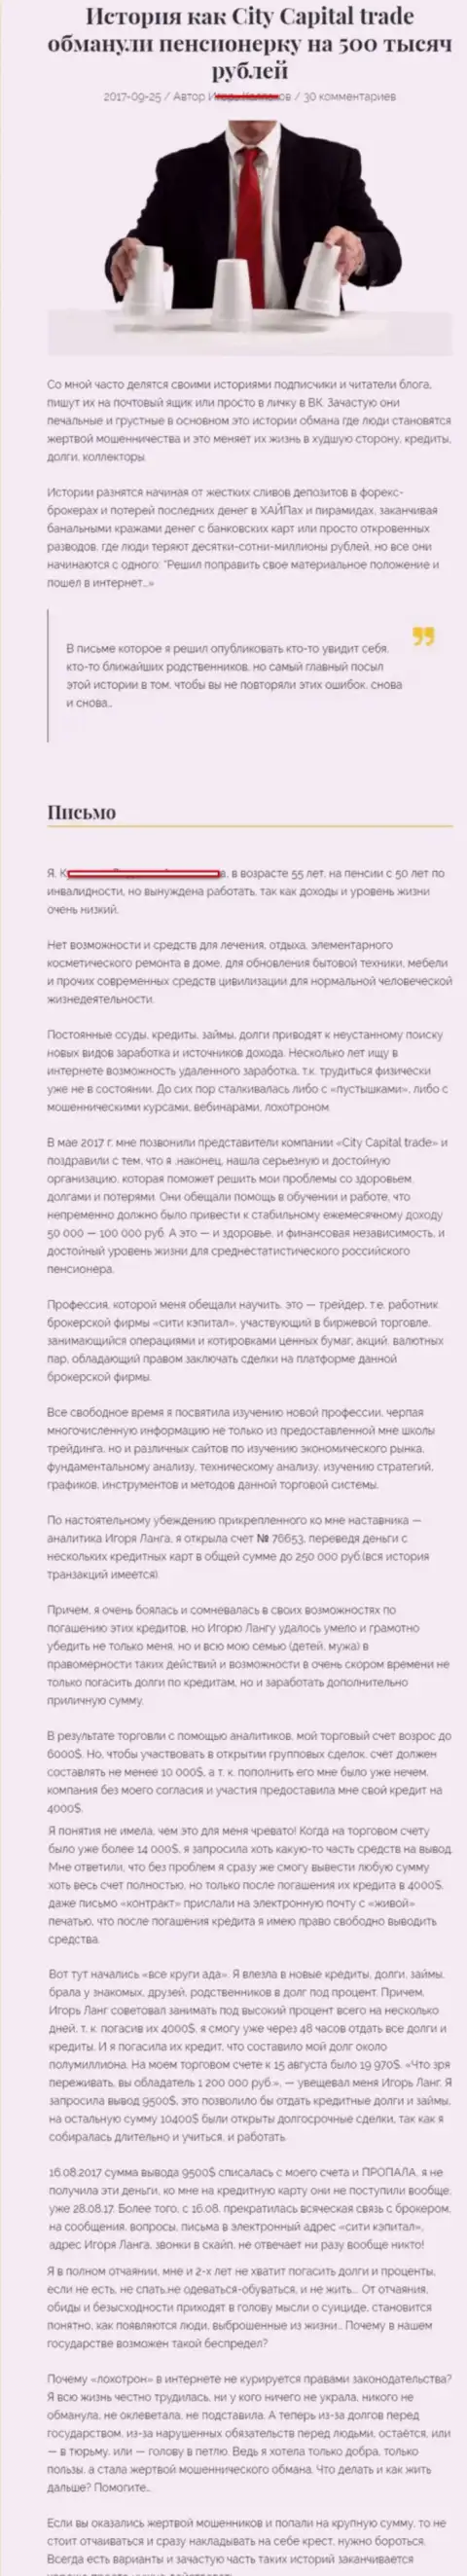 СитиКапиталТрейд ограбили клиентку пенсионного возраста - инвалида на 500 тысяч российских рублей - ЖУЛИКИ !!!